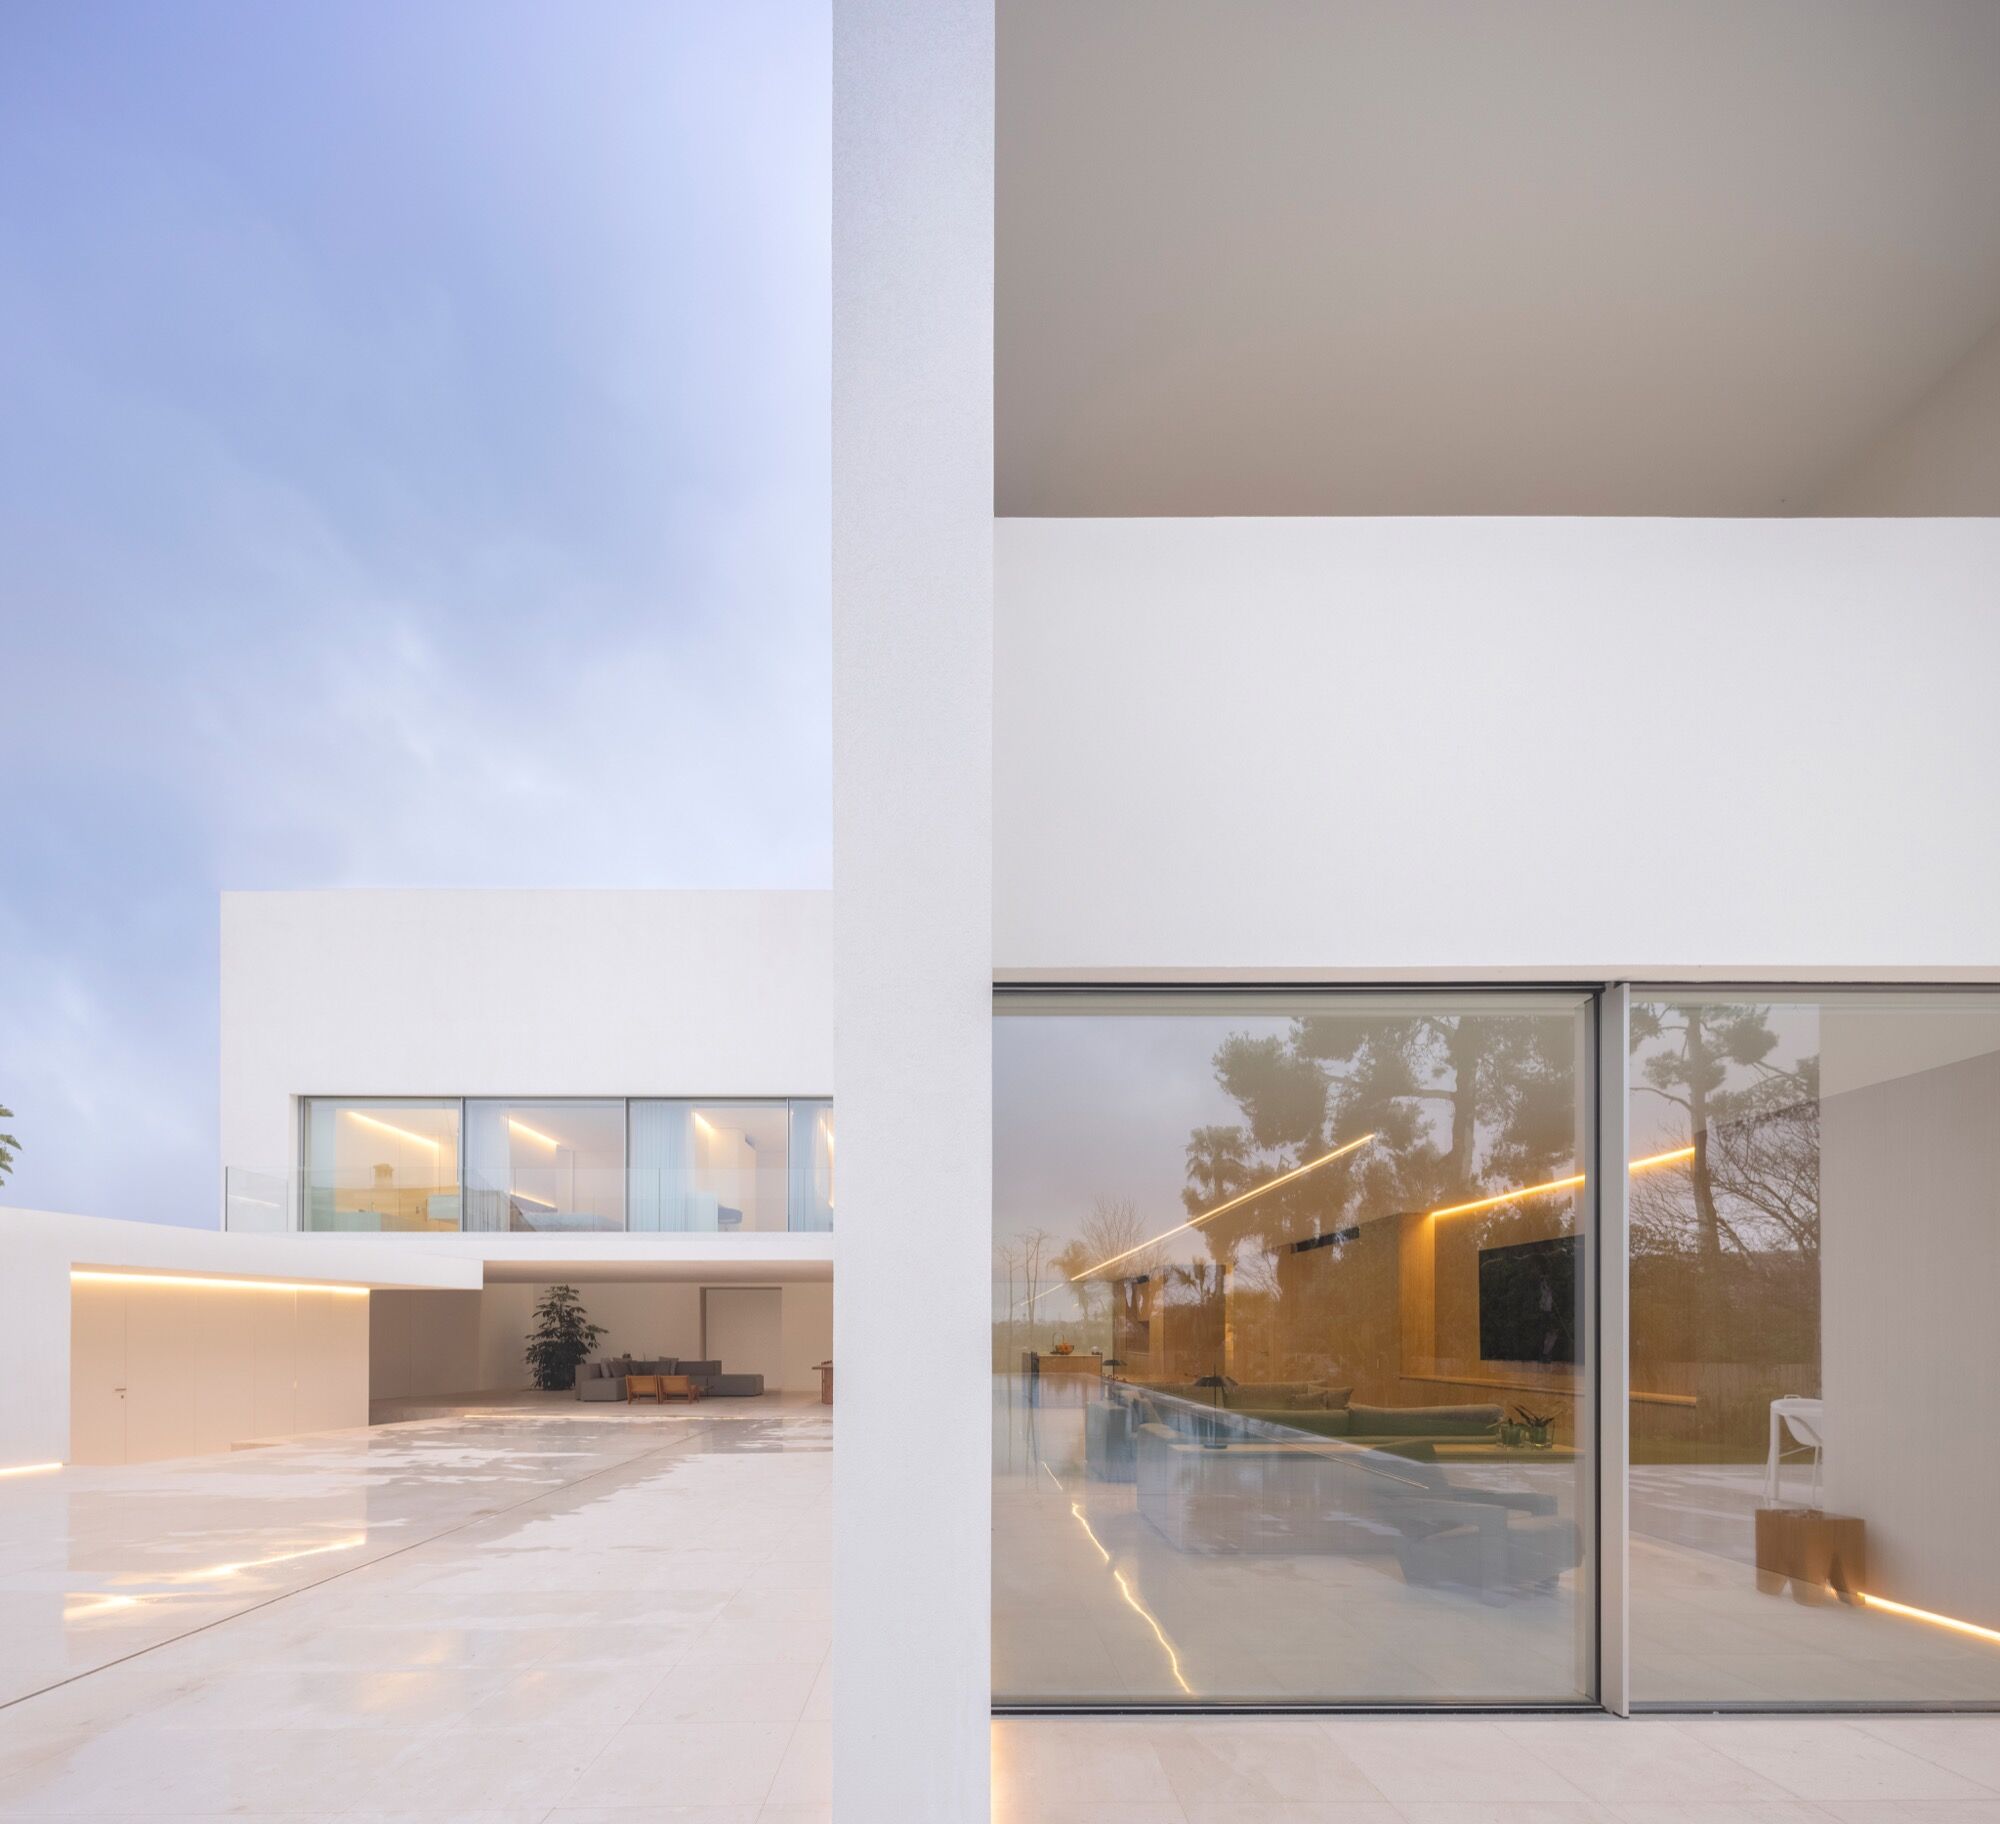 别墅设计,别墅设计案例,Fran Silvestre Arquitectos,西班牙,国外别墅设计案例,巴伦西亚,白色别墅,极简主义,极简风格